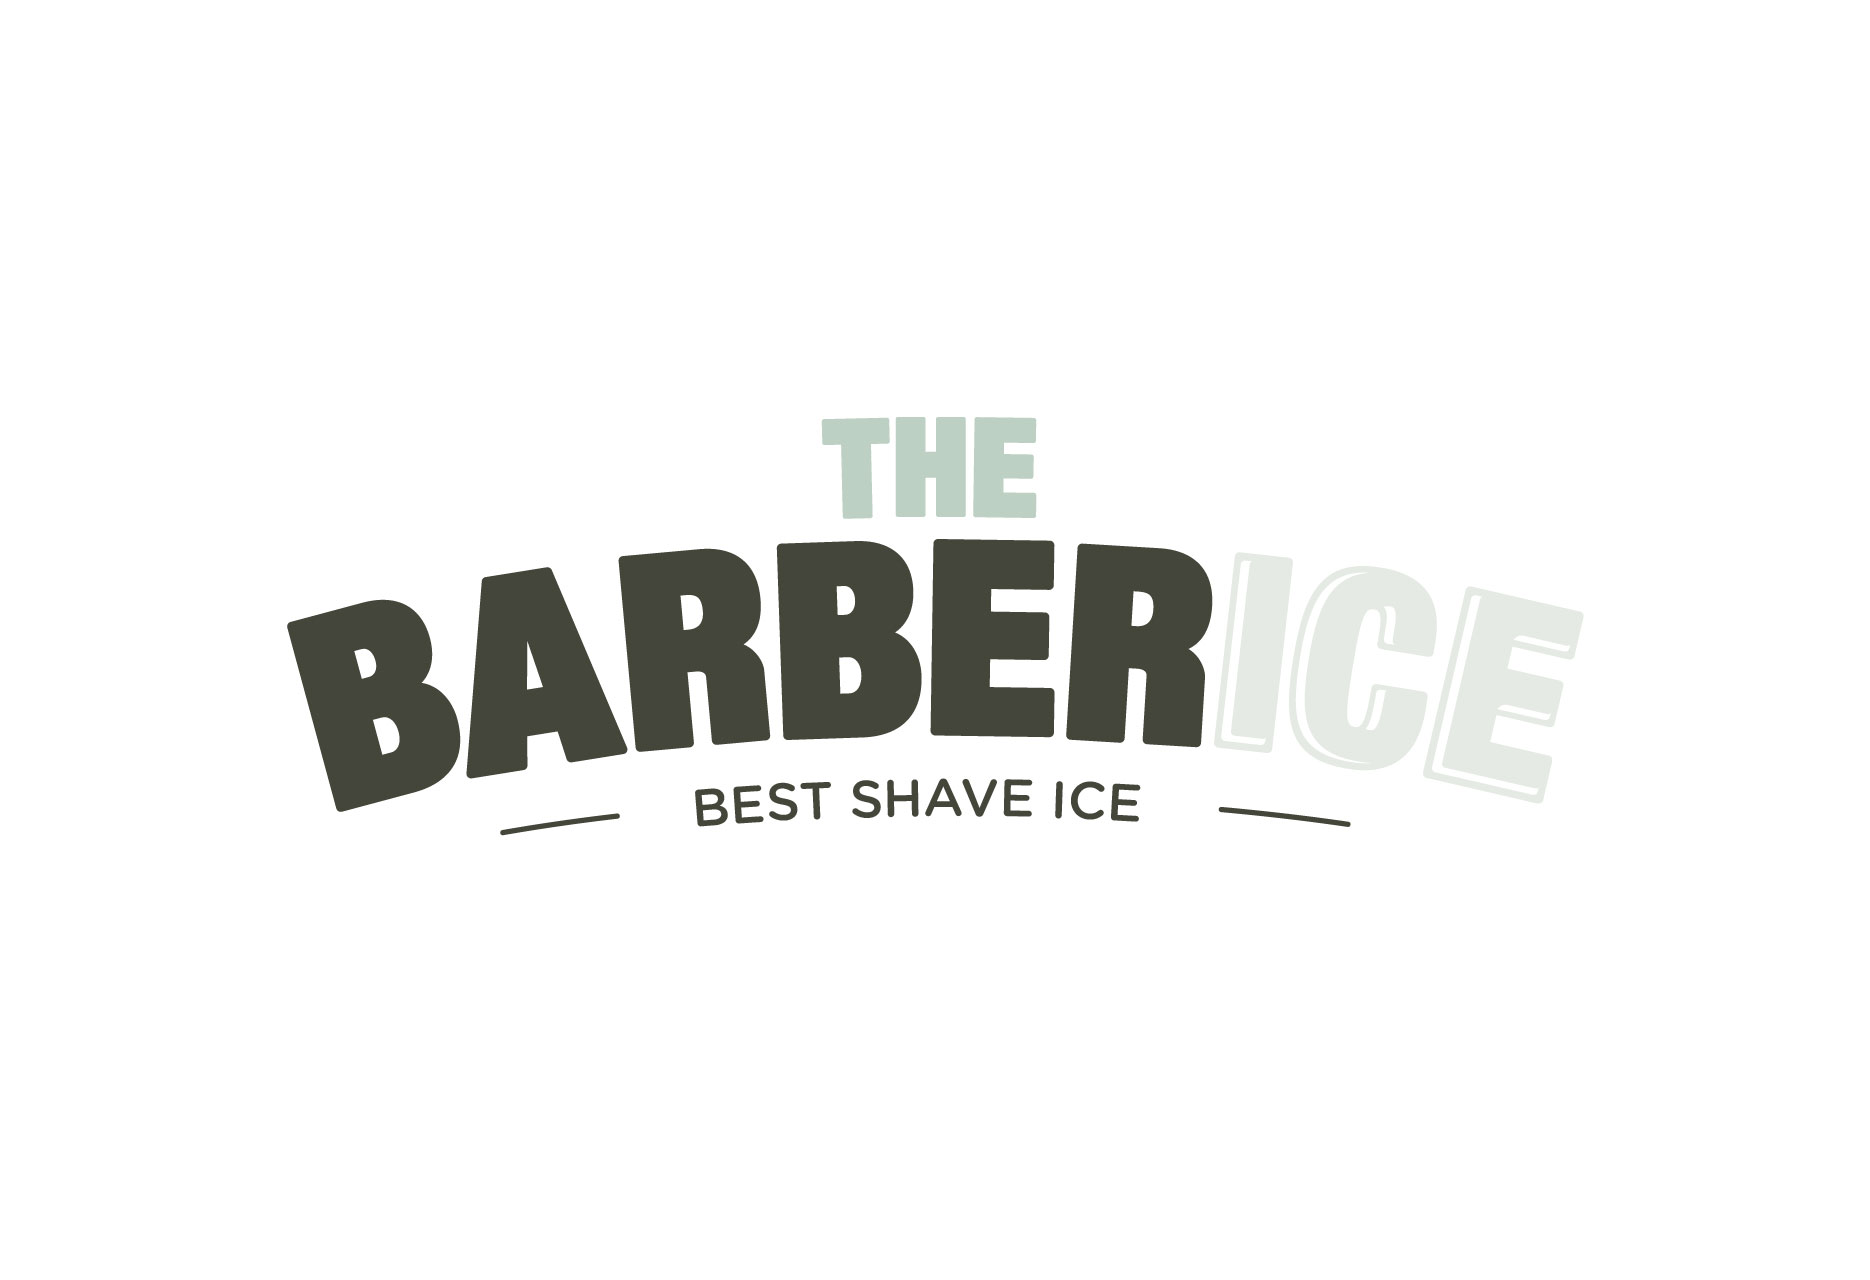 Diseño de marca para heladería Barberice - identidad corporativa / ilustración - 2014